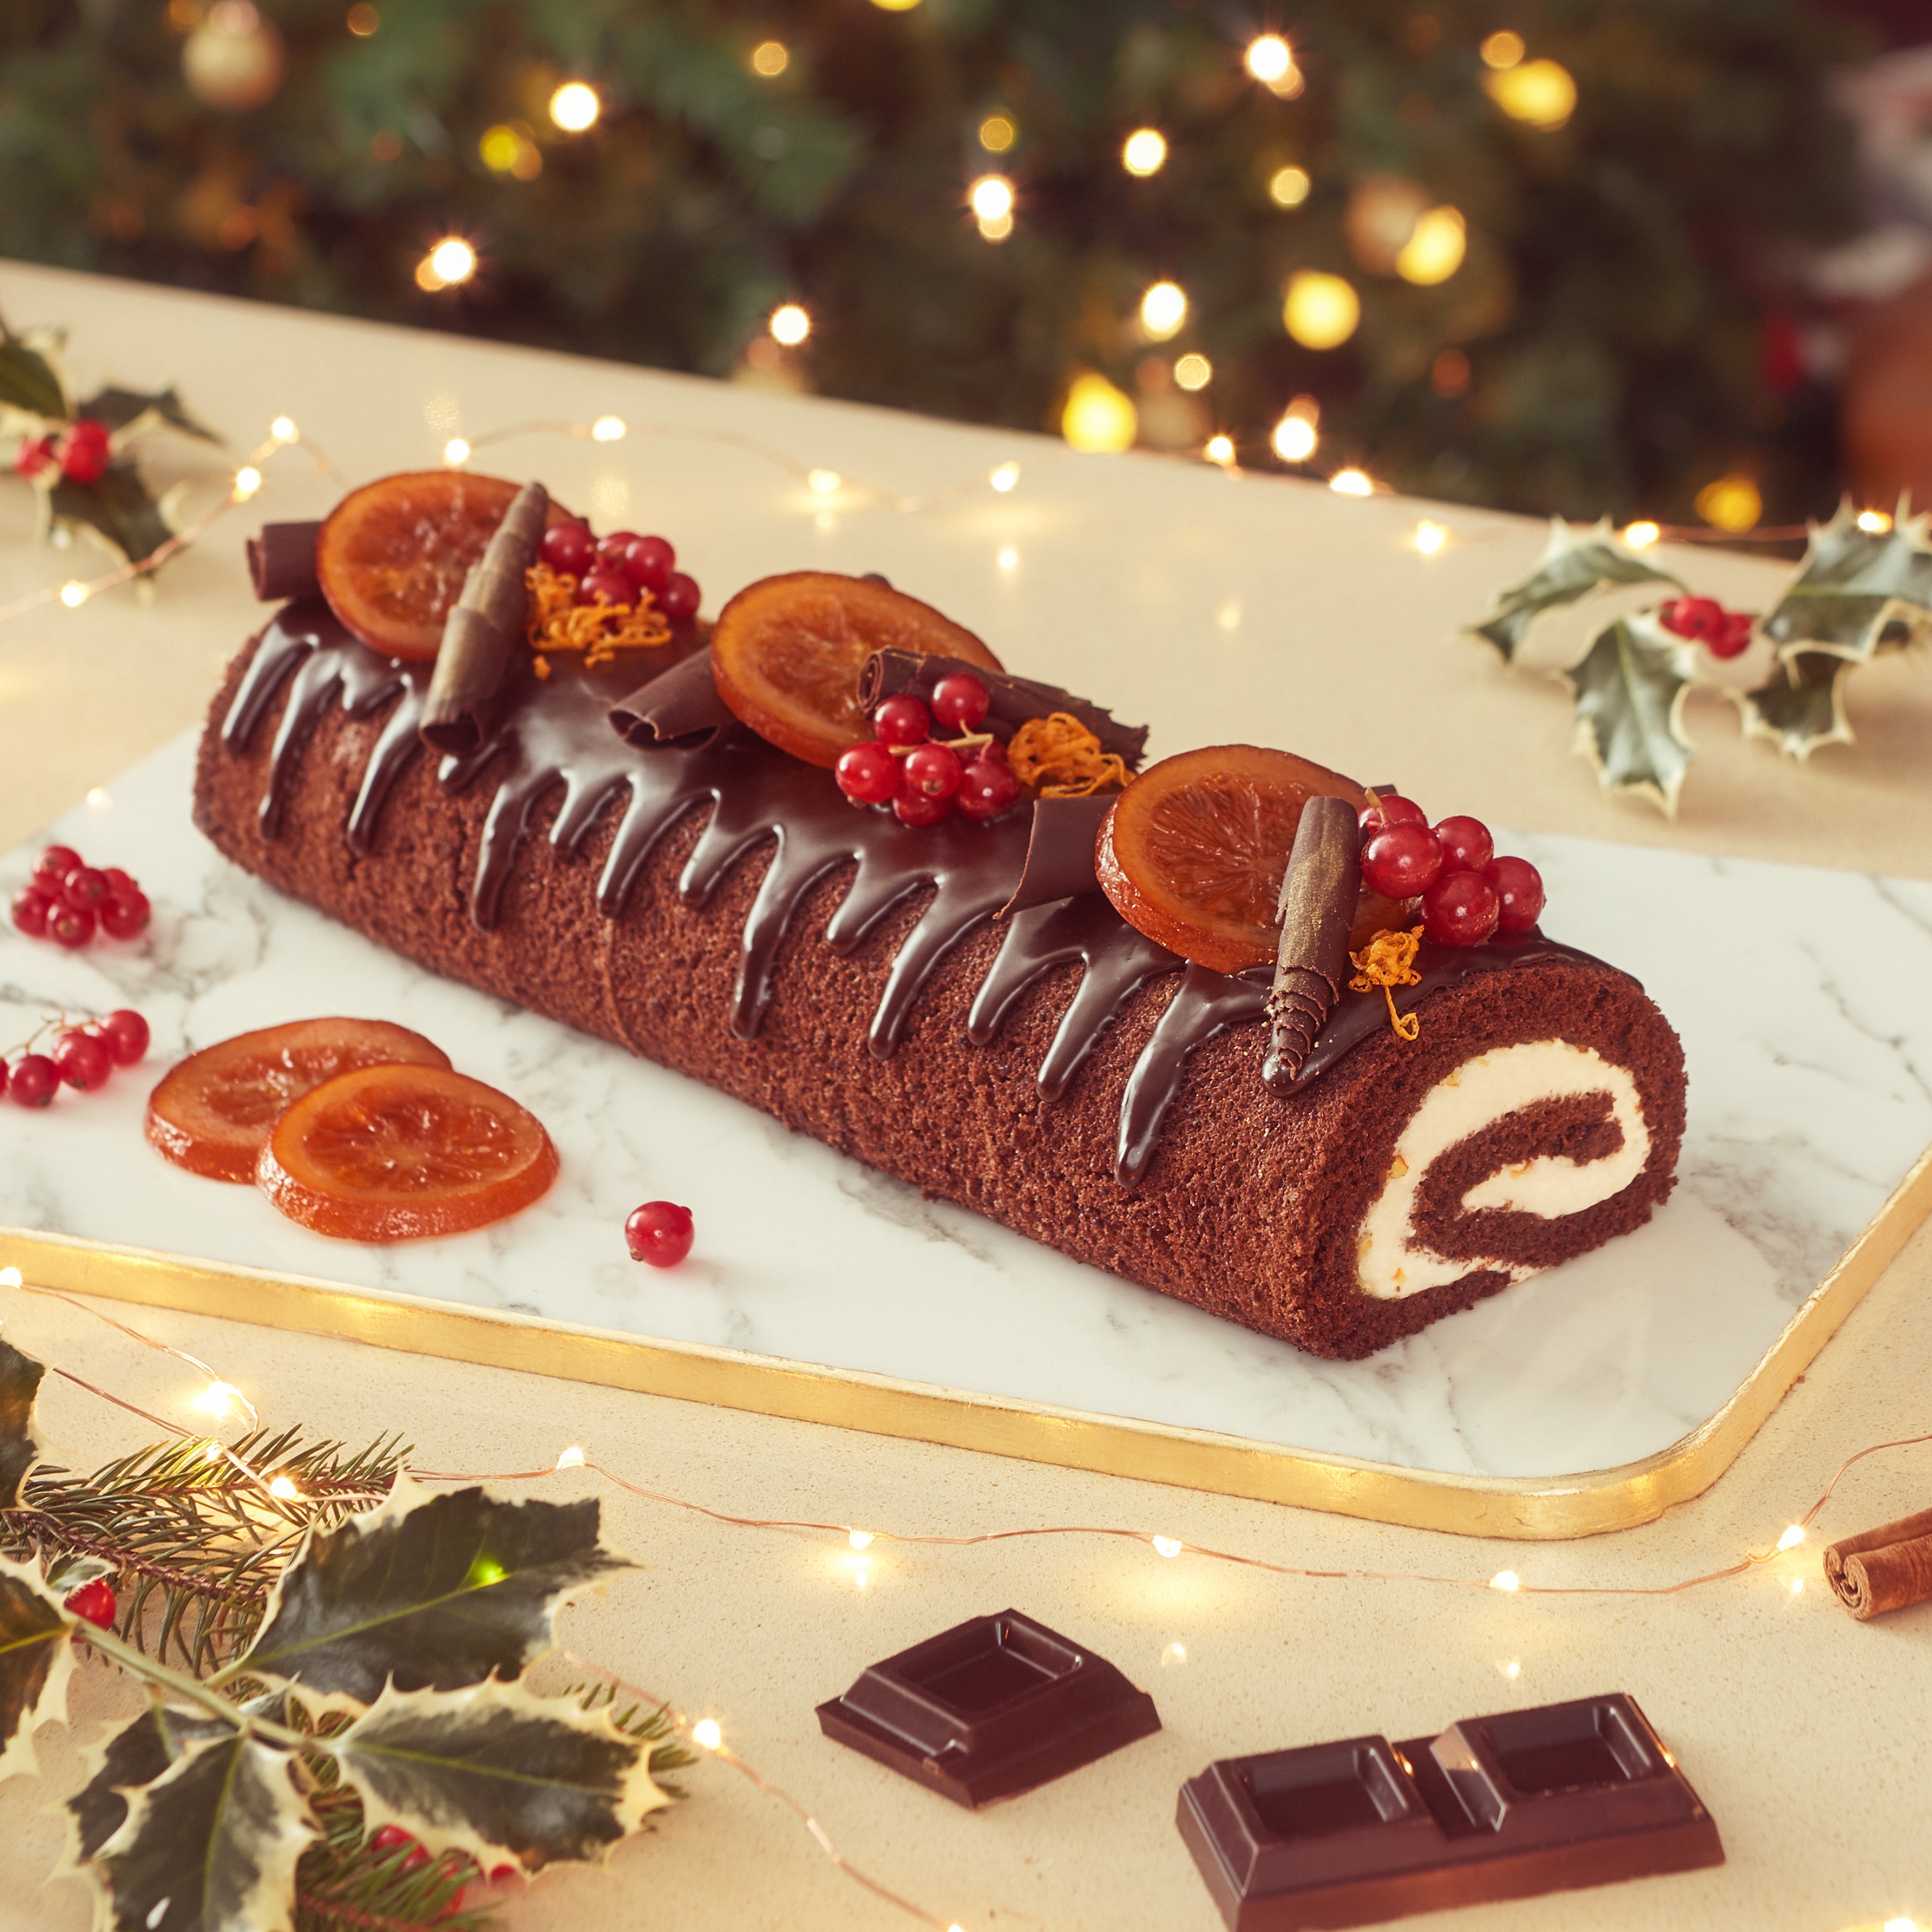 Tronchetto Di Natale Per Bambini.La Ricetta Del Tronchetto Di Natale Al Cioccolato Arancia E Cannella